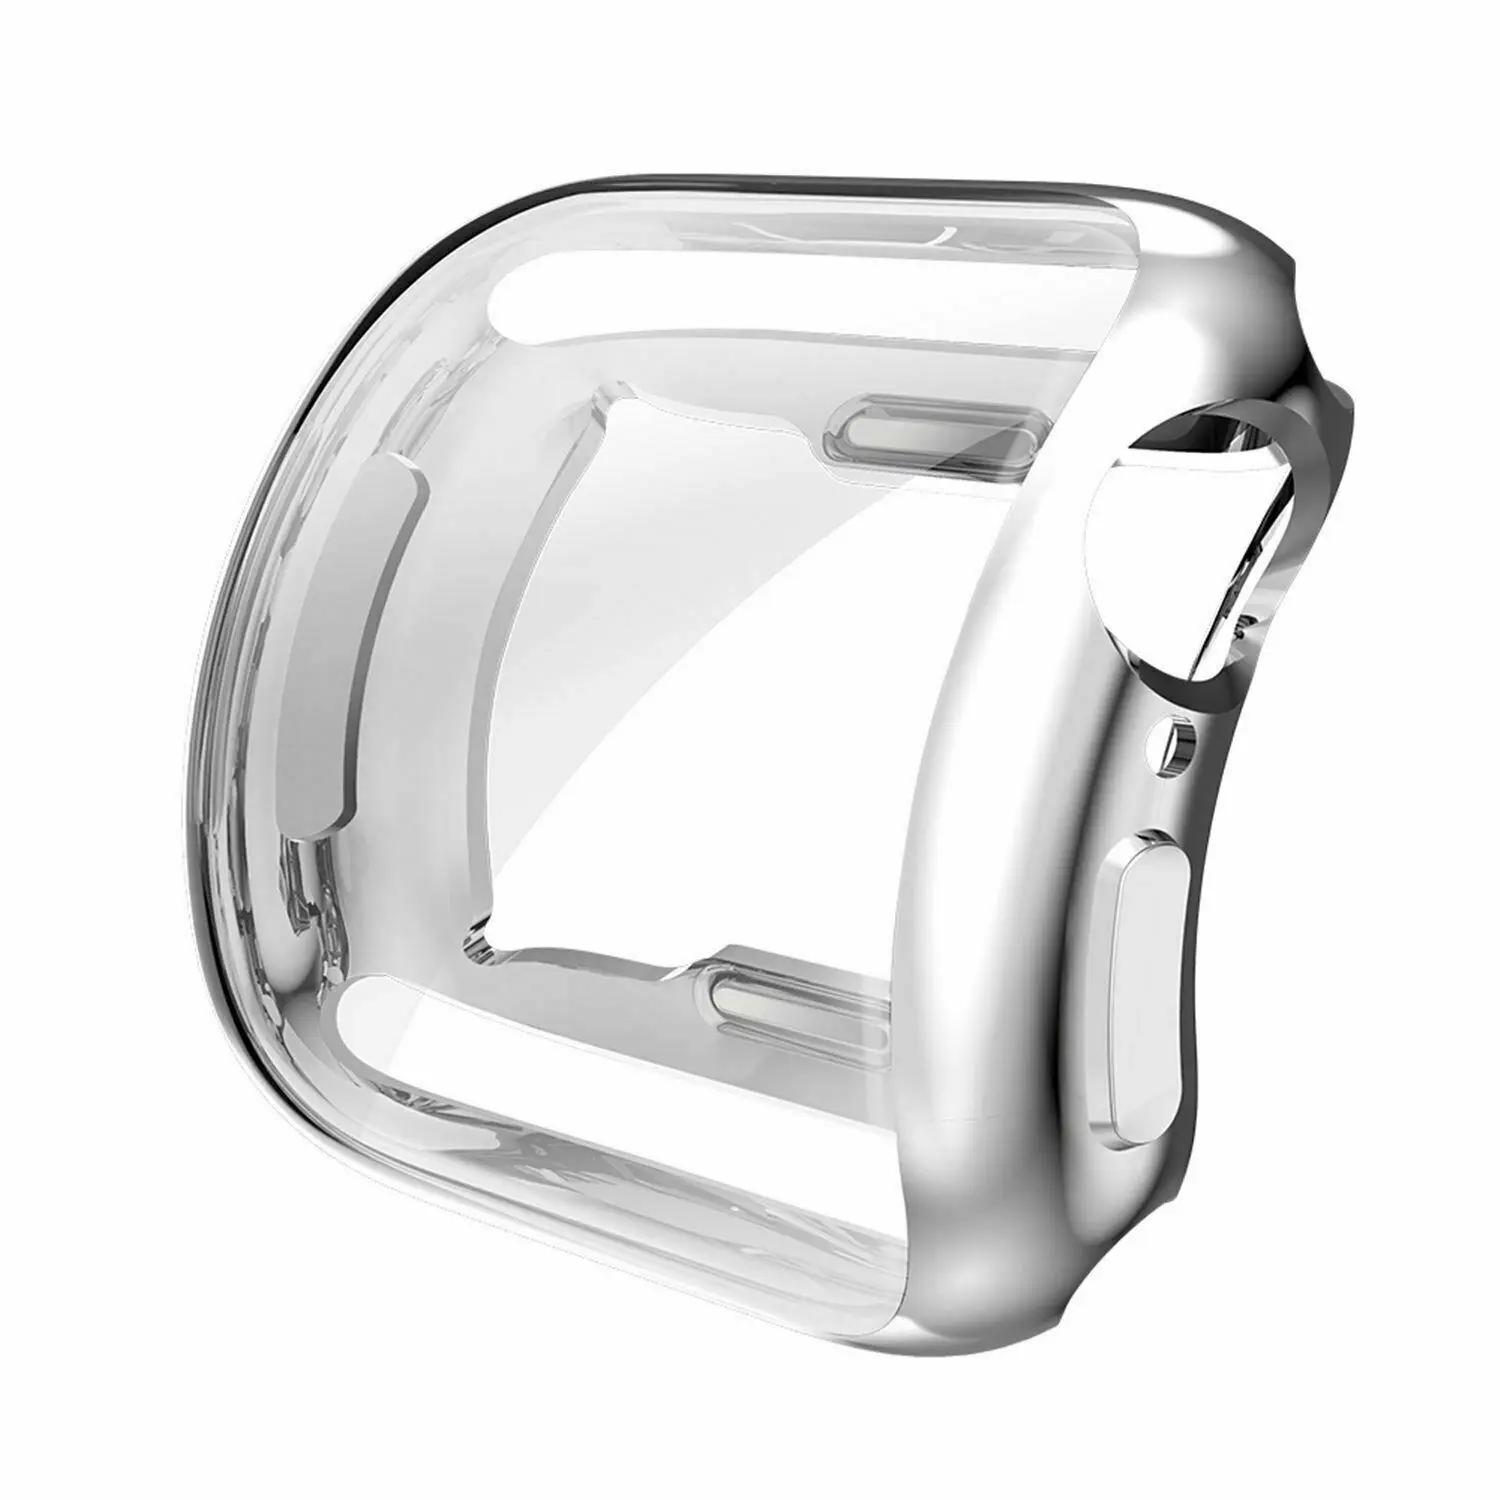 HOCO de la Galjanoplastia de TPU Reloj de la Cubierta Para Apple Watch 5/4 44 mm 40 mm Plena Protección de Silicona Caso Protector de Pantalla para iWatch Serie 4, 5 4